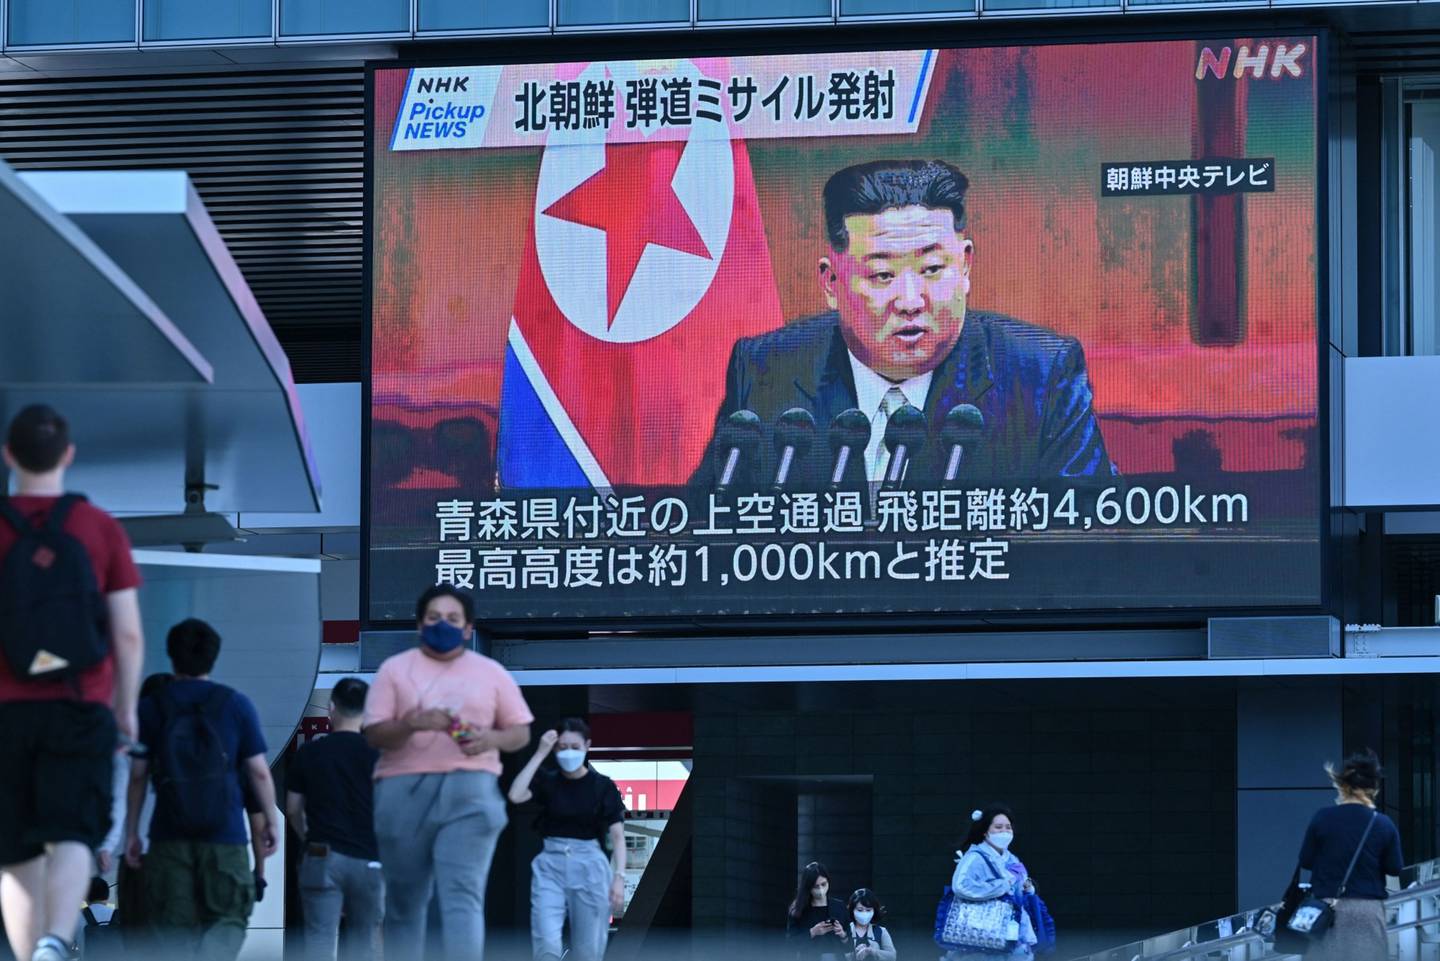 El líder norcoreano Kim Jong-un en una pantalladfd